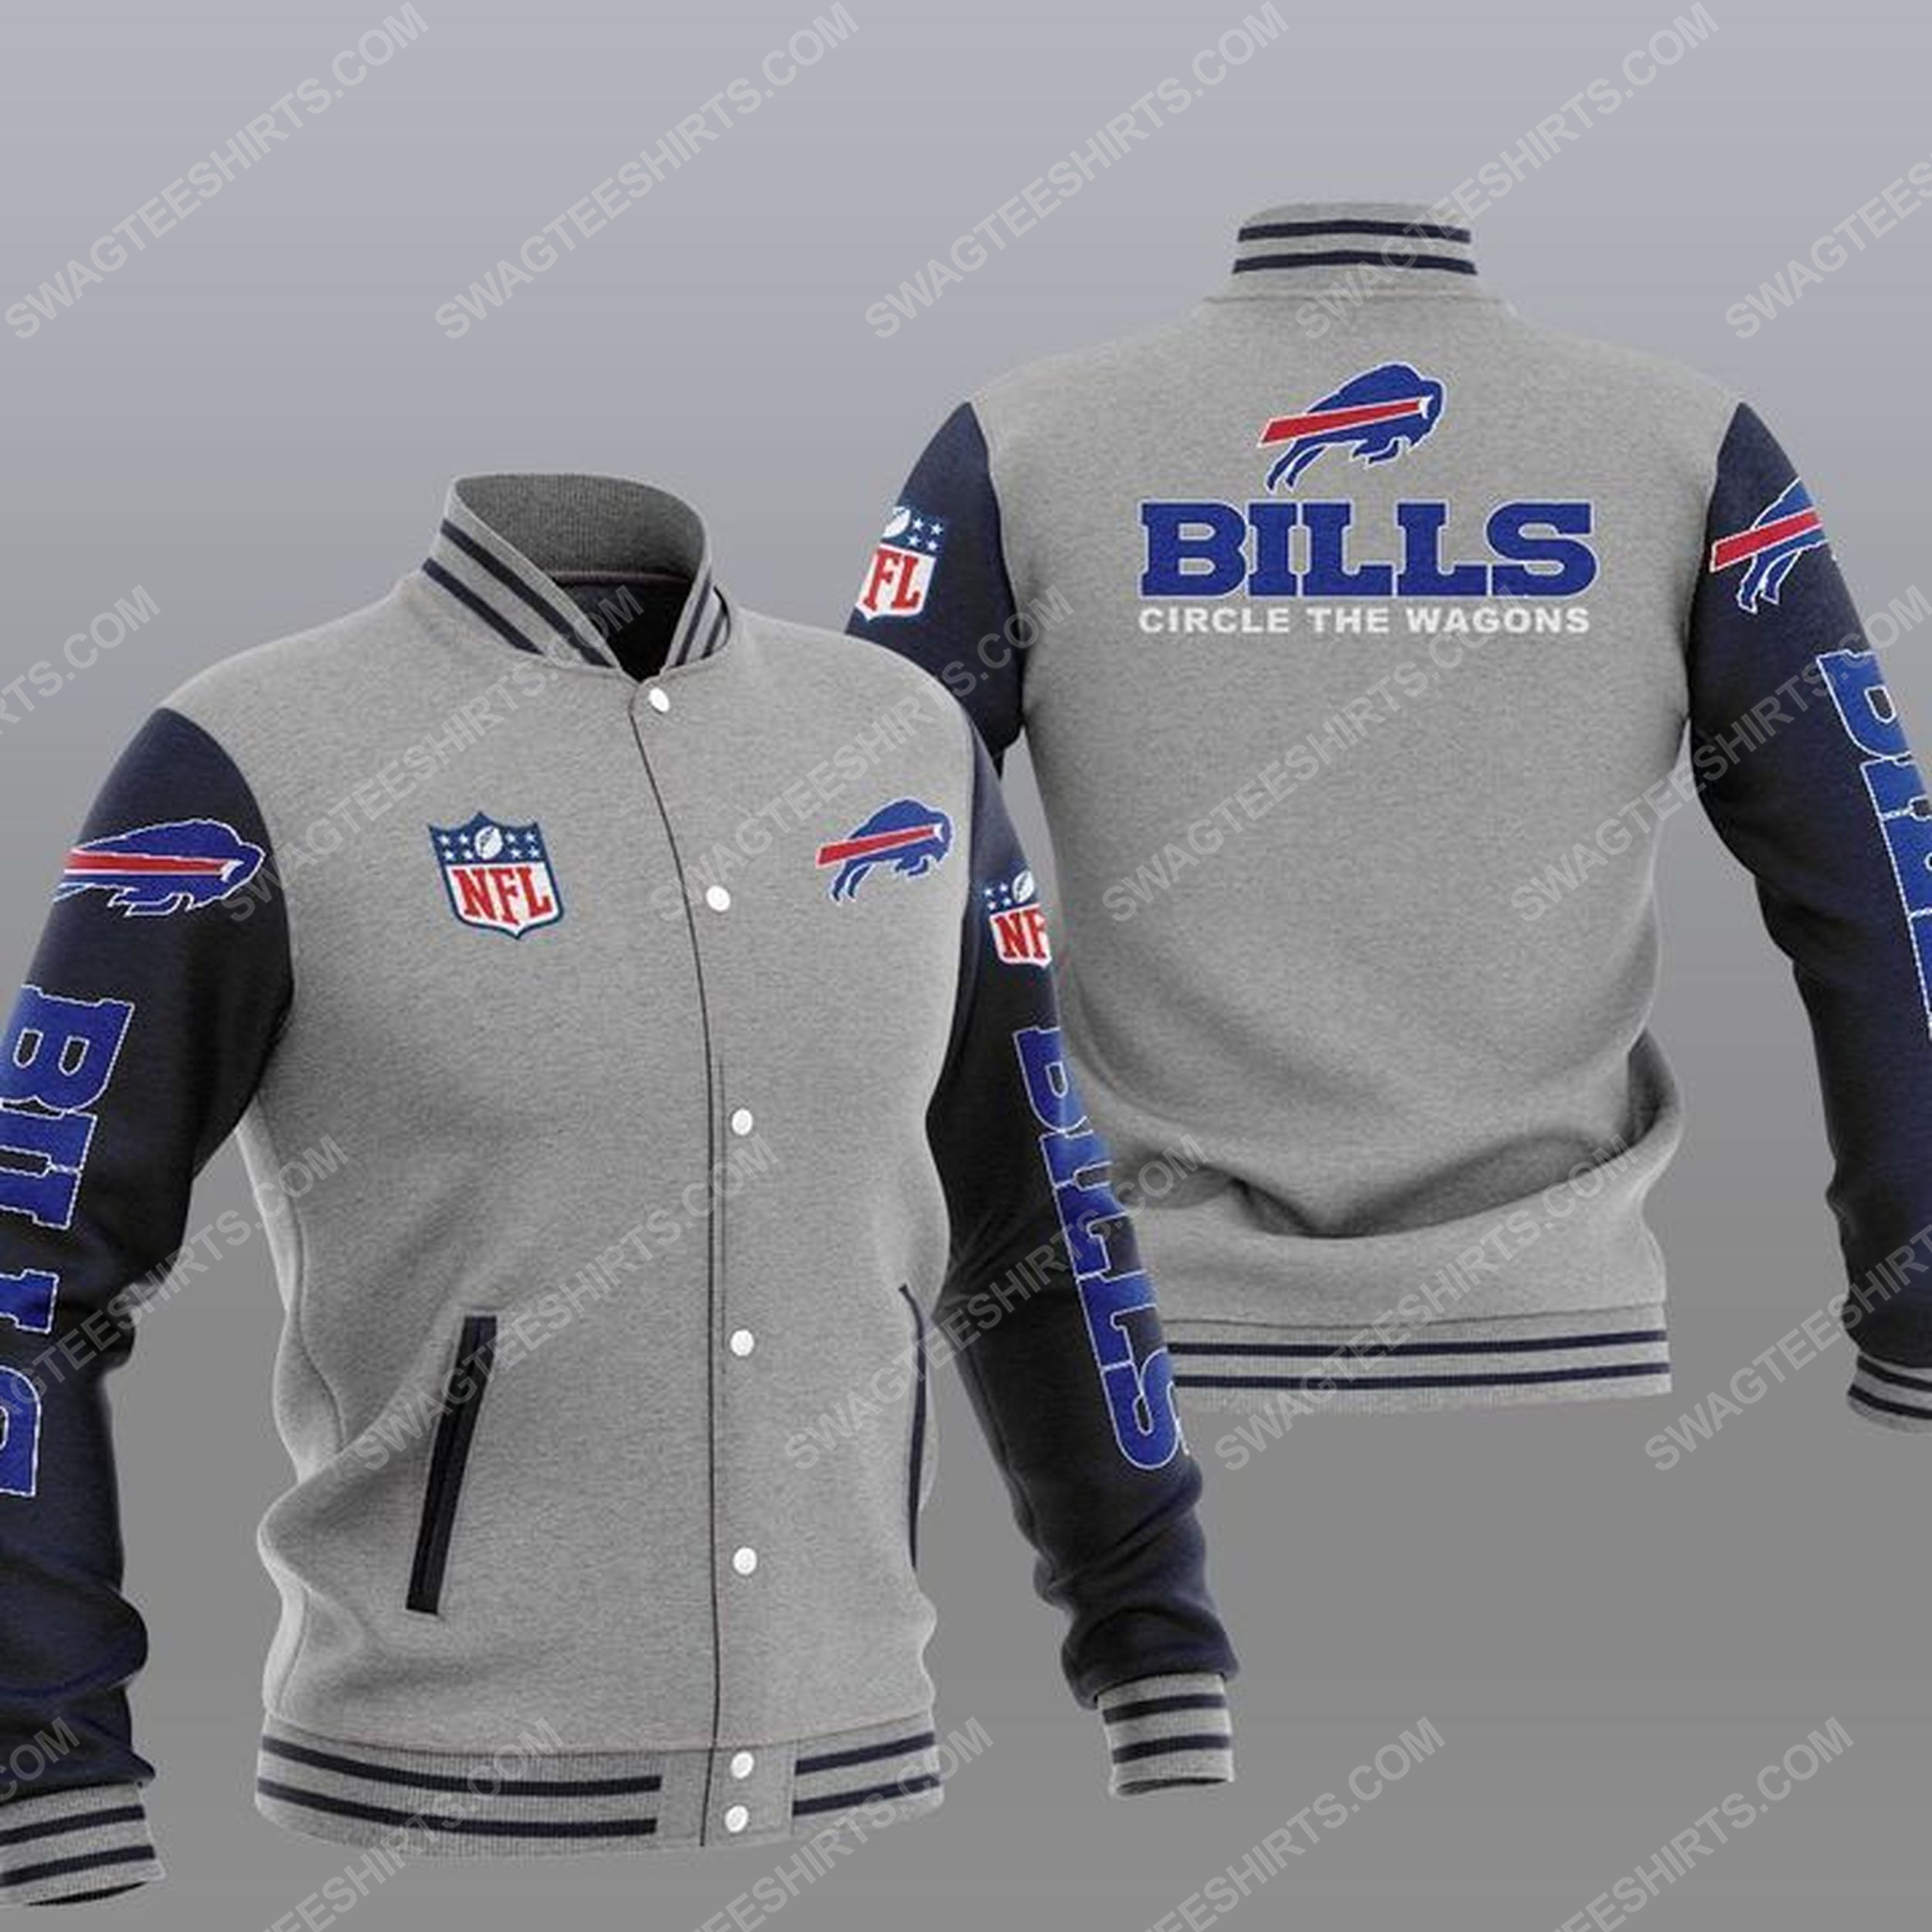 Buffalo bills circle the wagons all over print baseball jacket - gray 1